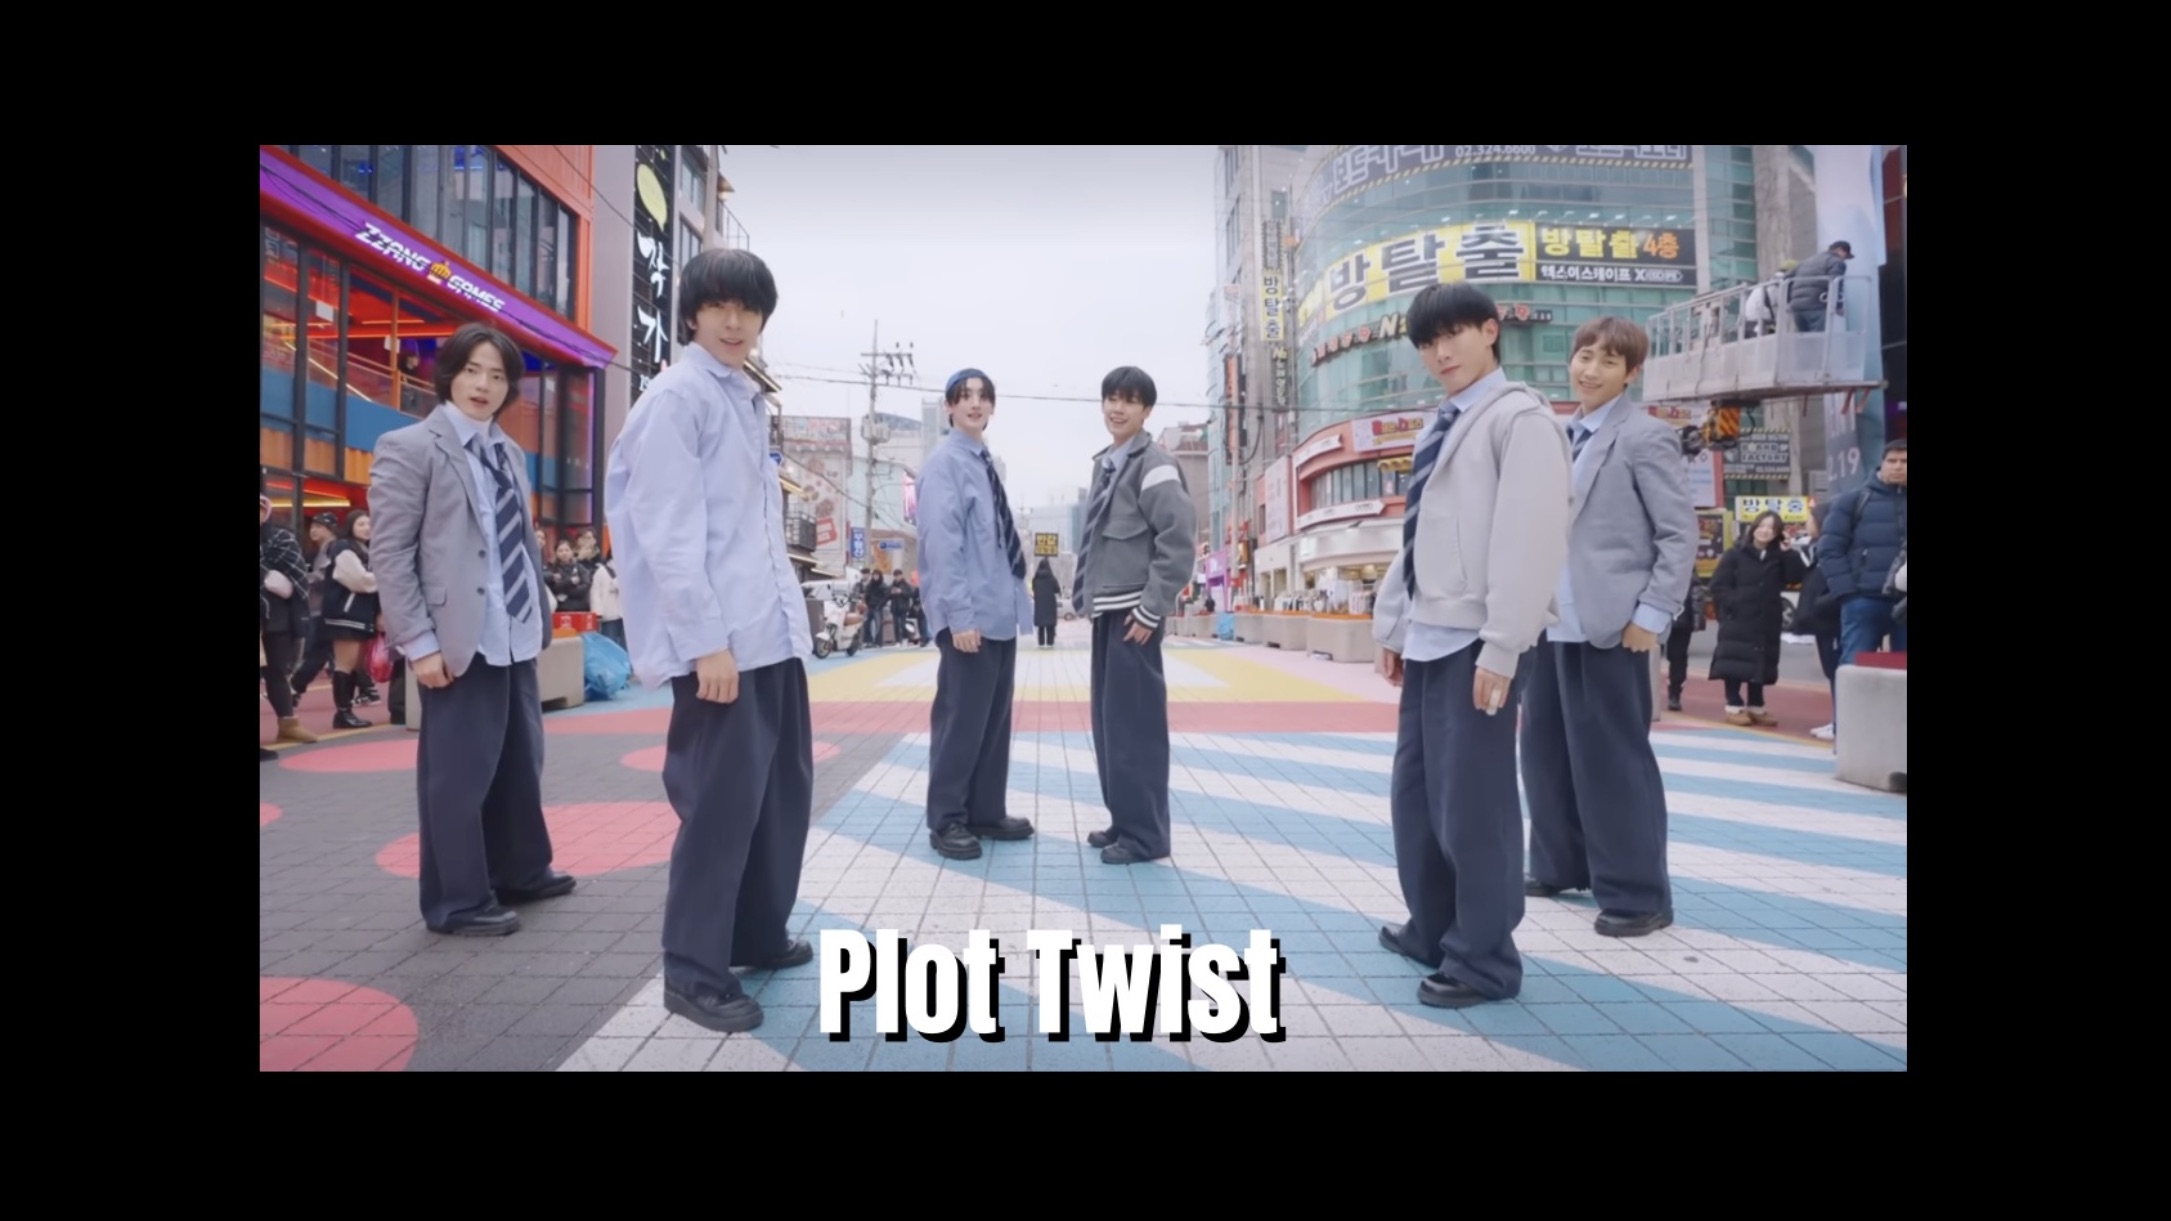 [在这?] TWS - Plot Twist | 翻跳 Dance Cover